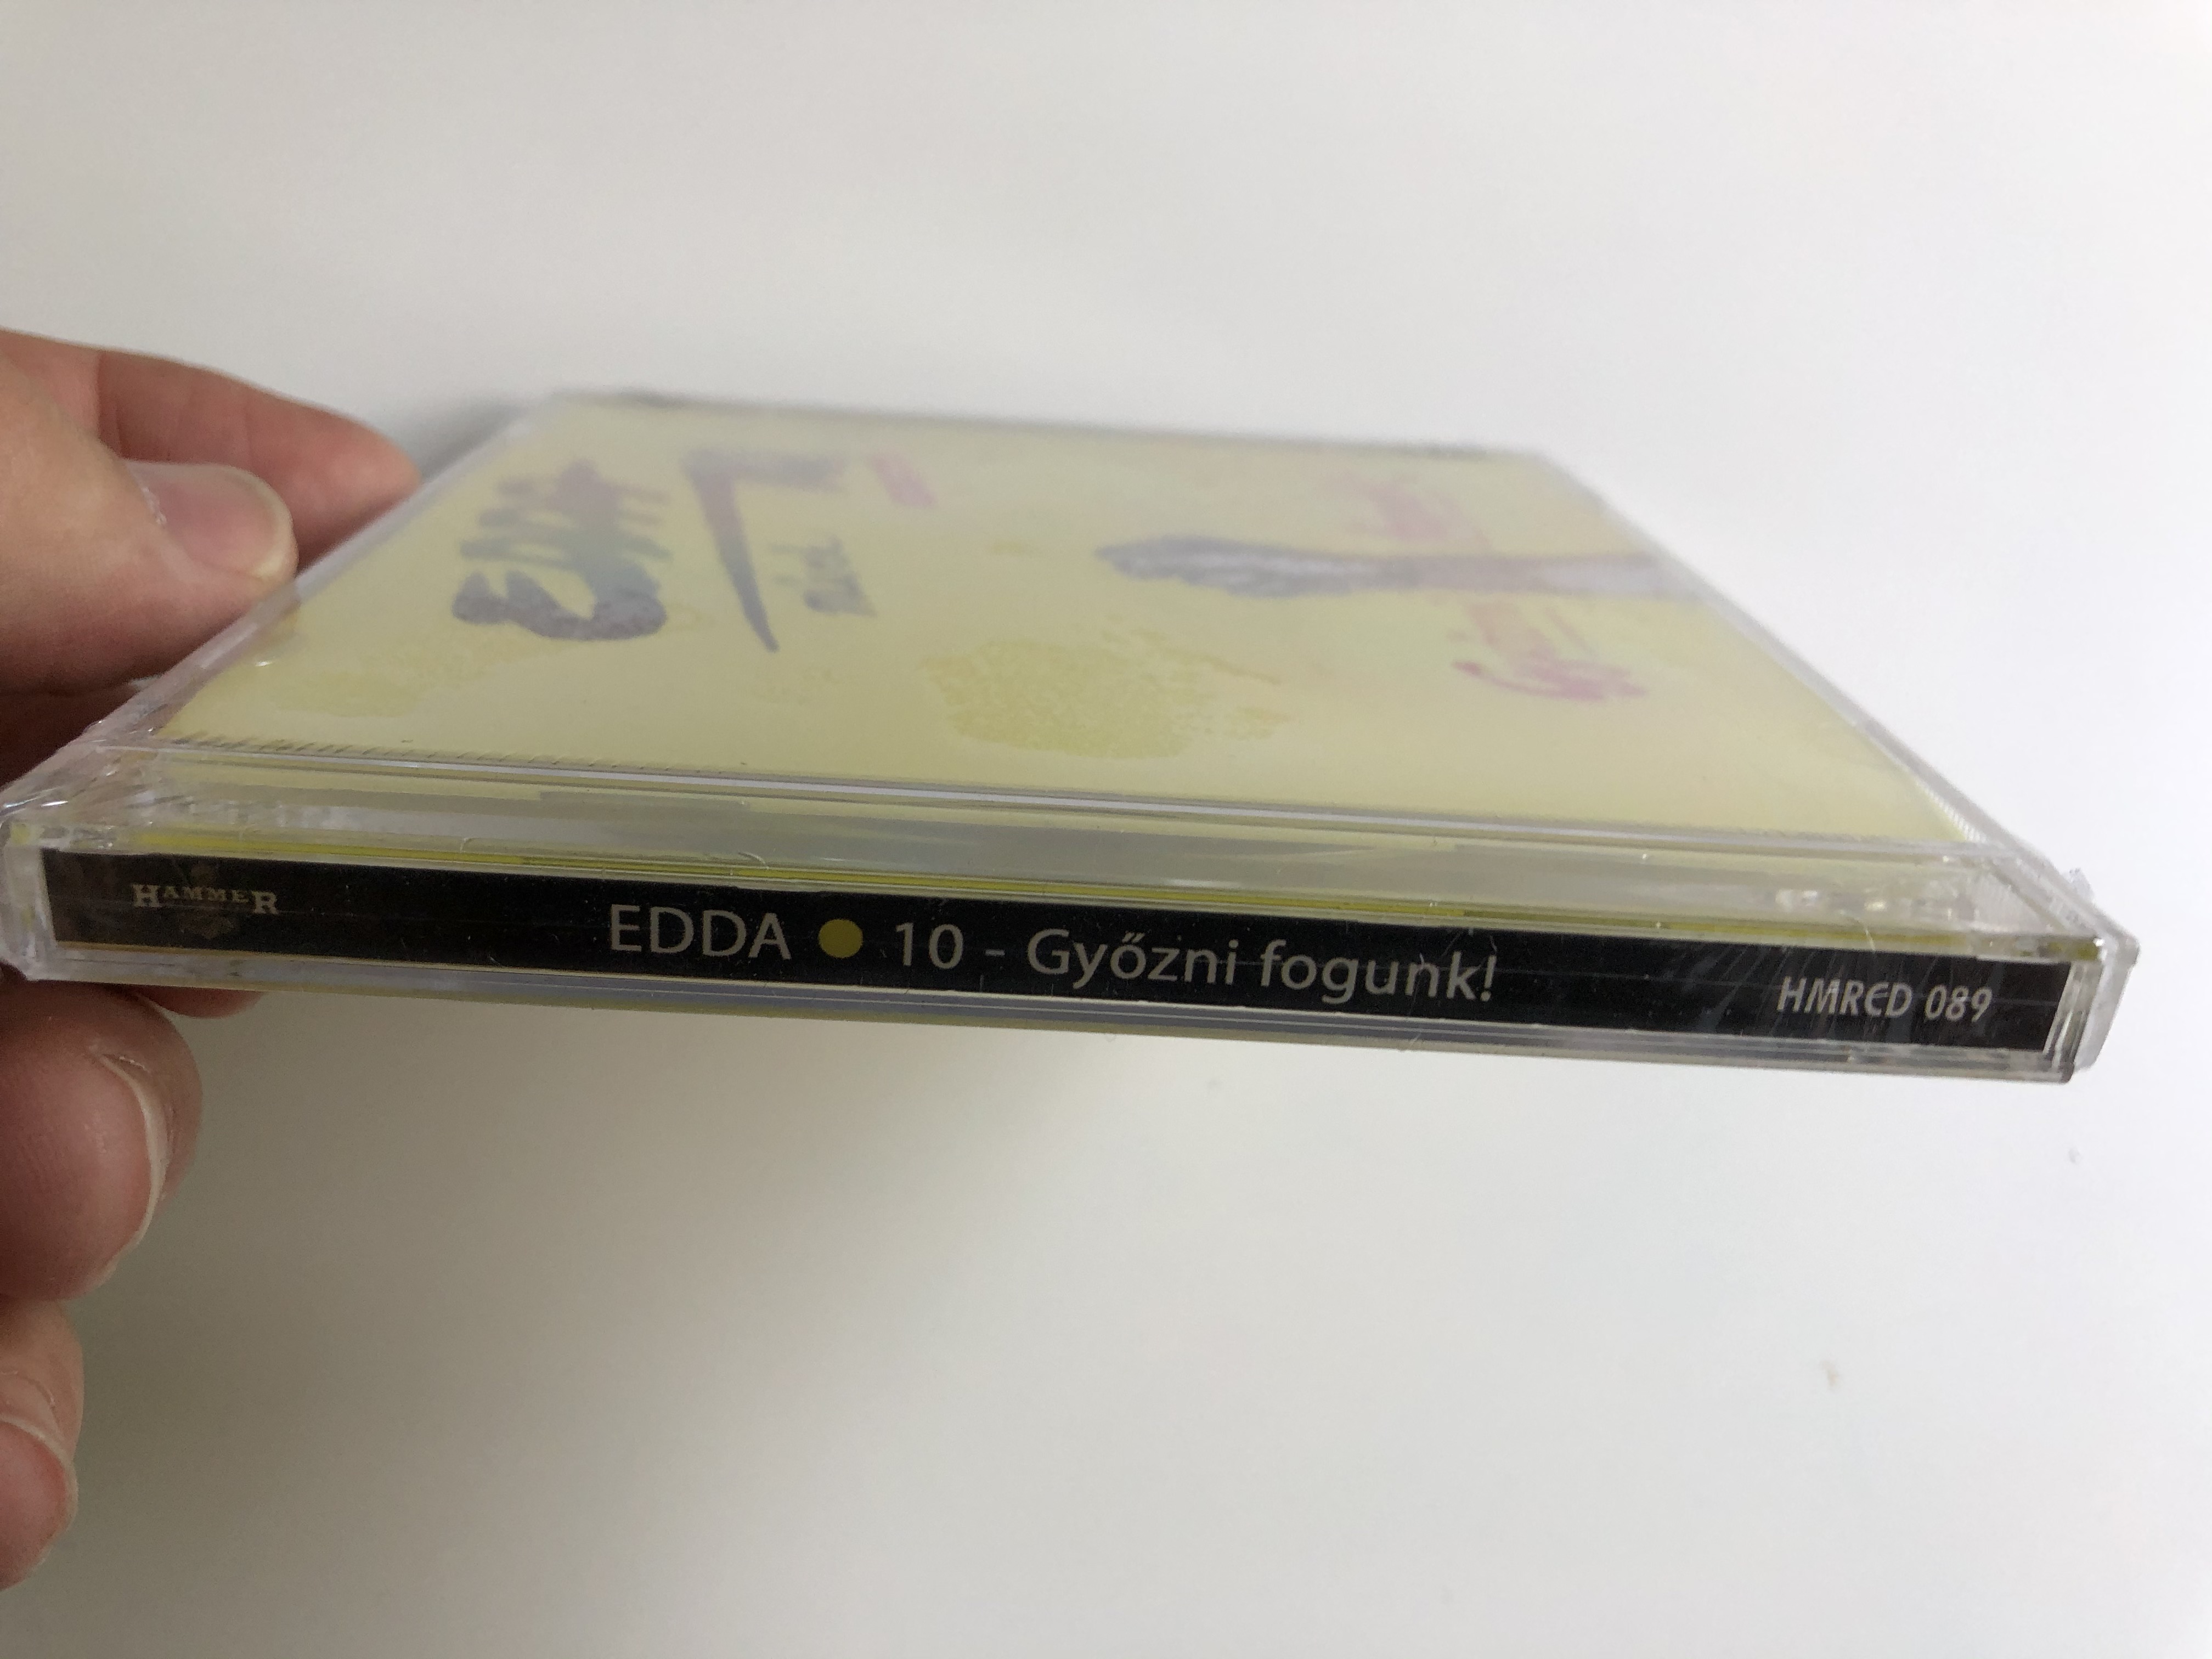 edda-m-vek-10.-gy-zni-fogunk-10-ev-10-lemez-hammer-records-audio-cd-2010-hmrcd-089-3-.jpg